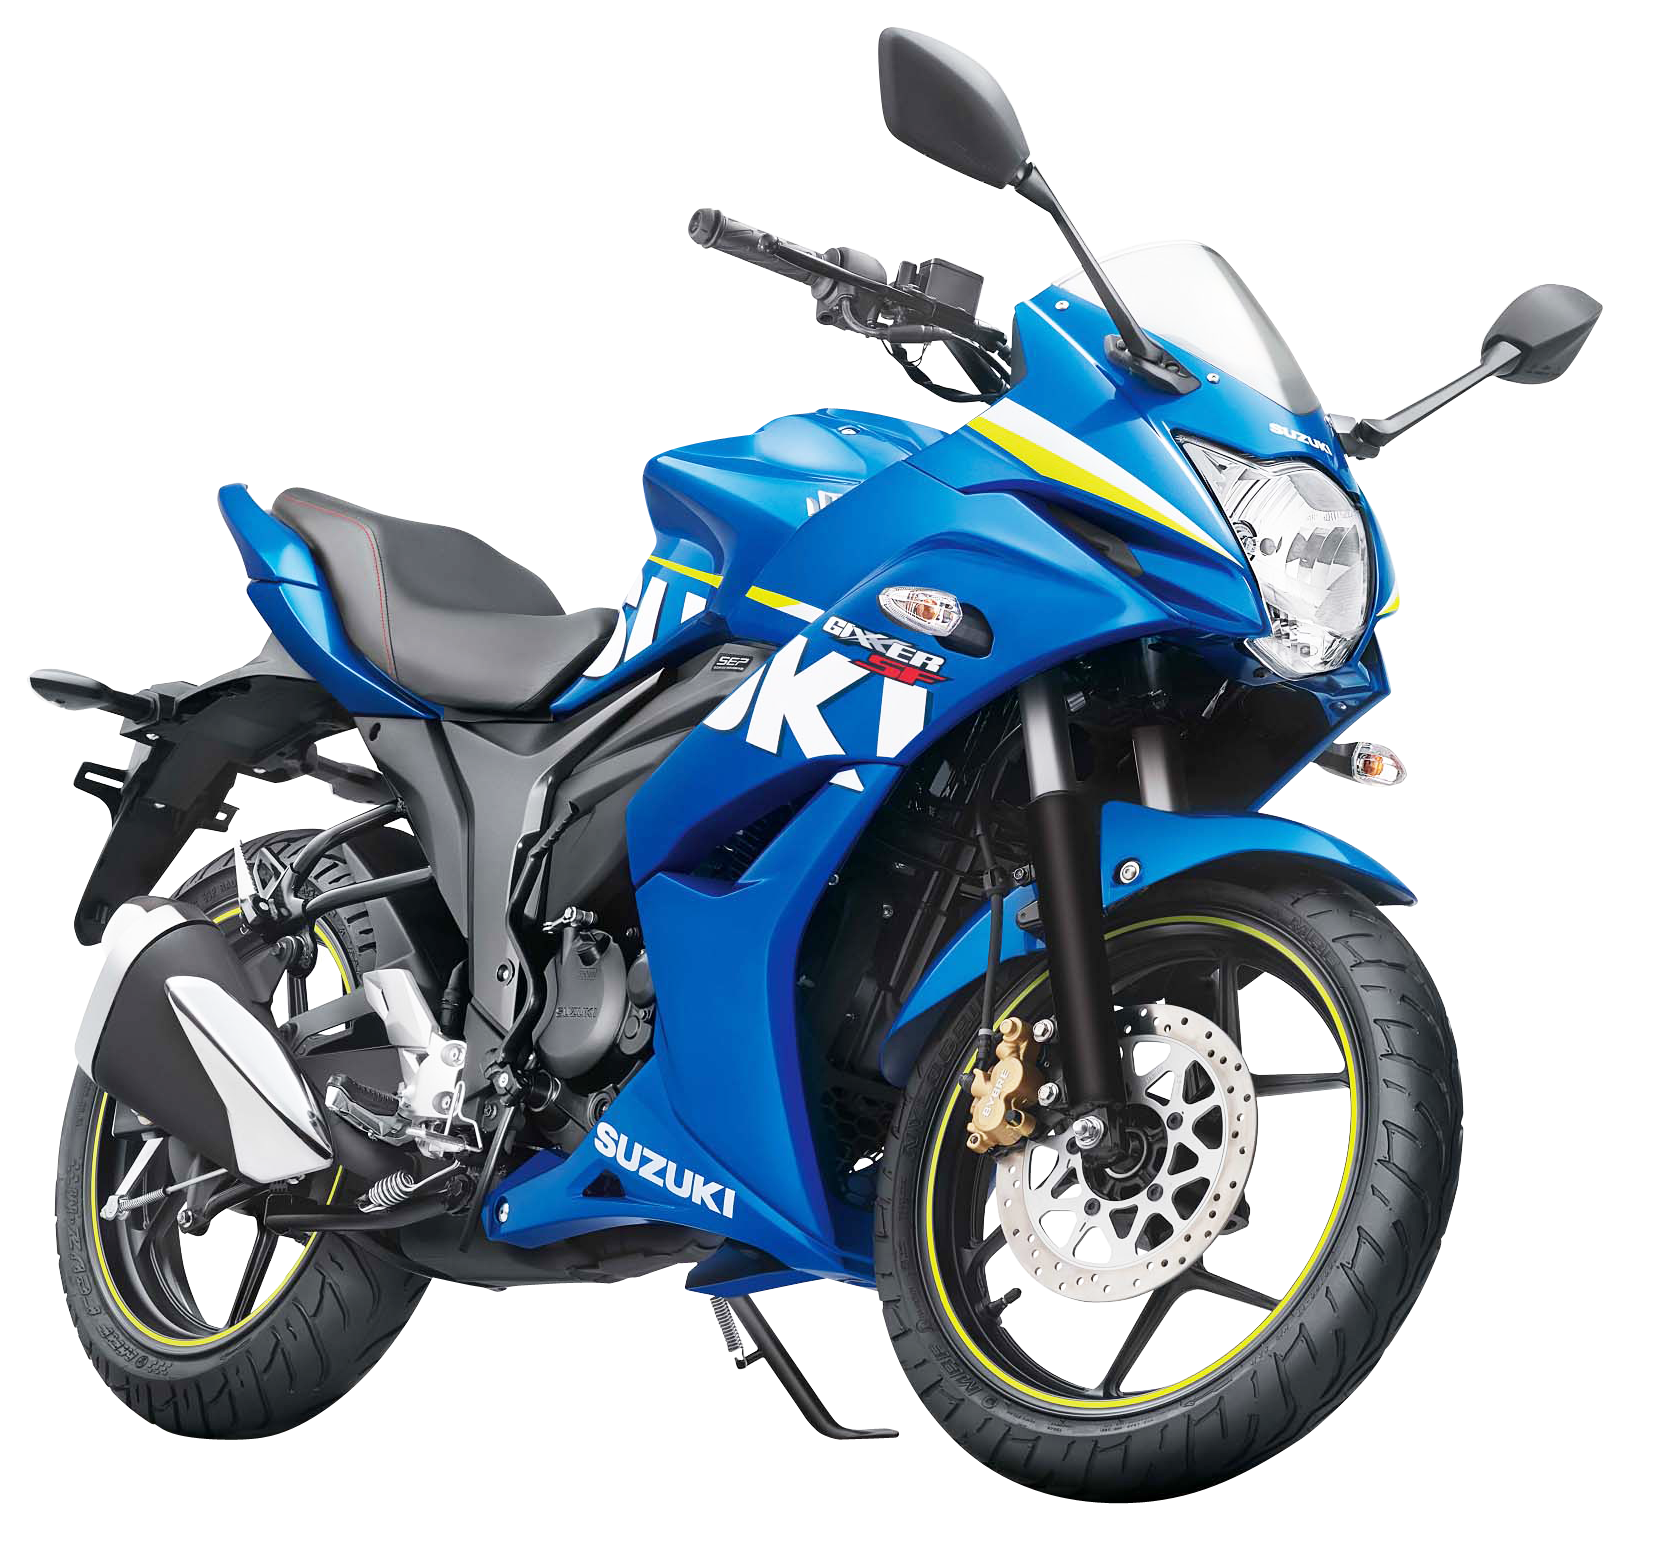 Suzuki vélo PNG Image Transparente